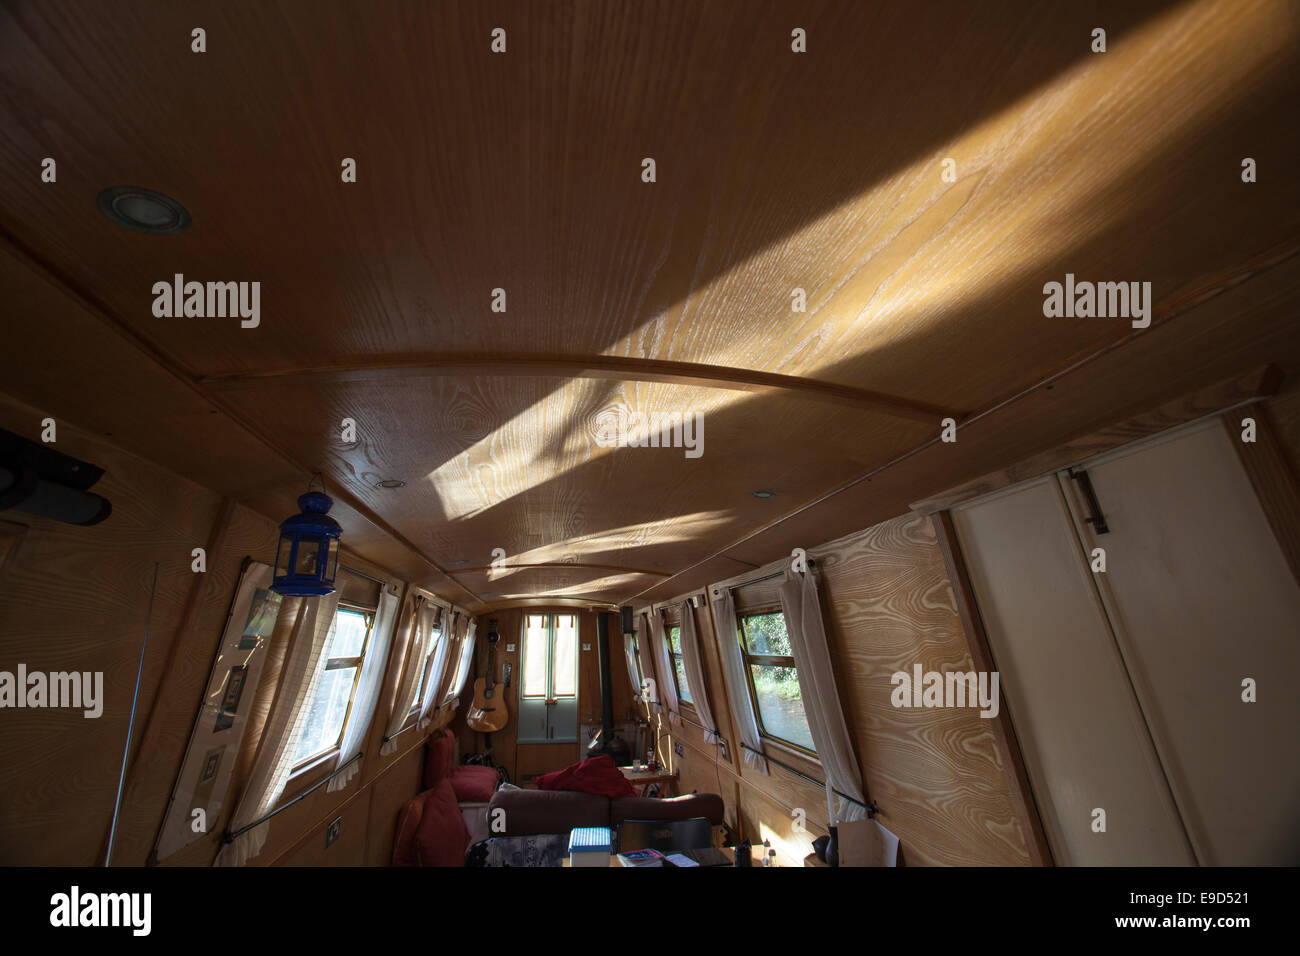 Narrowboat interior Stock Photo